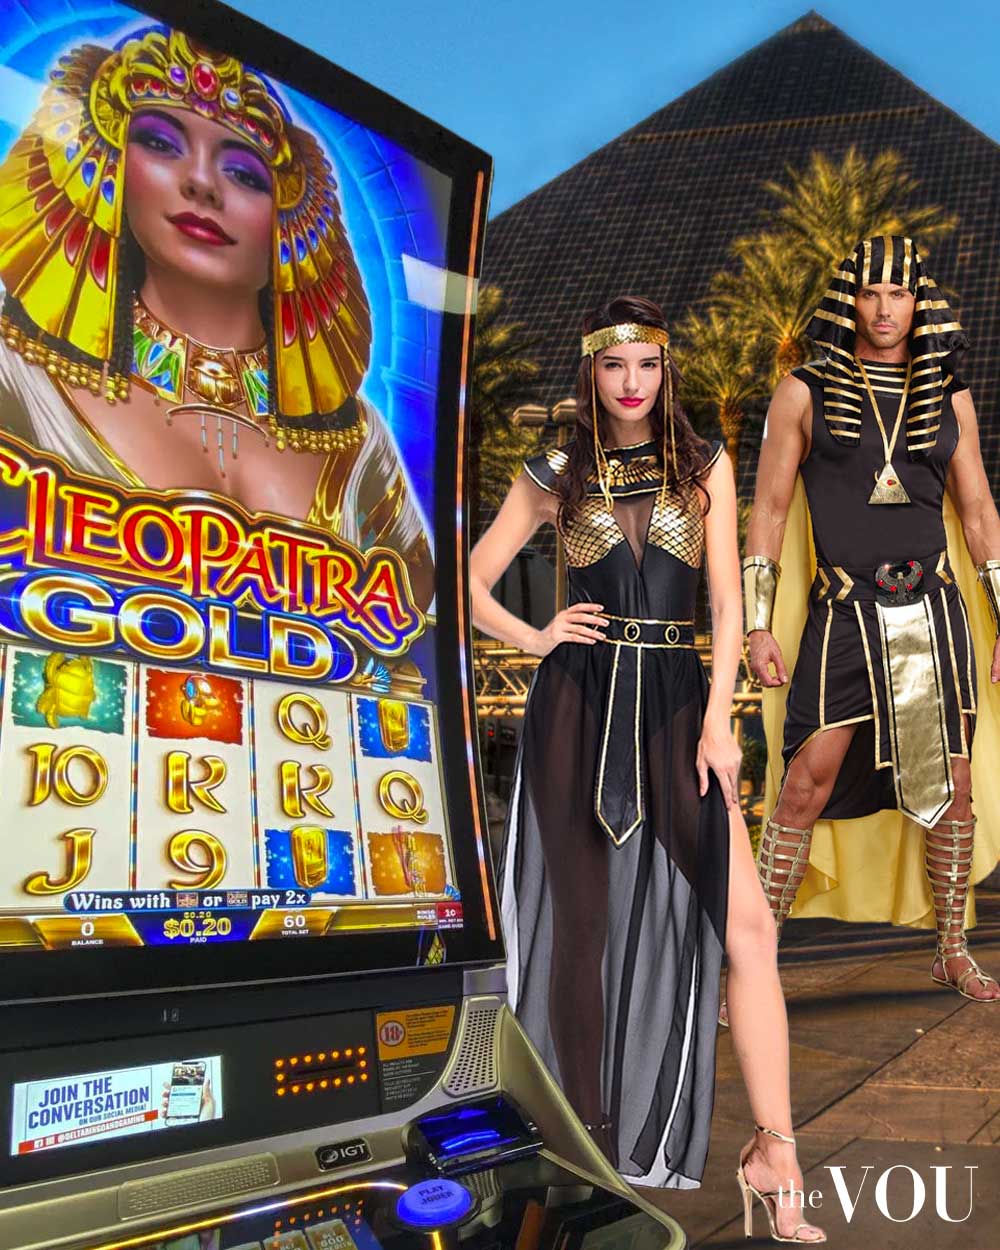 Egyptian Casino Theme Party